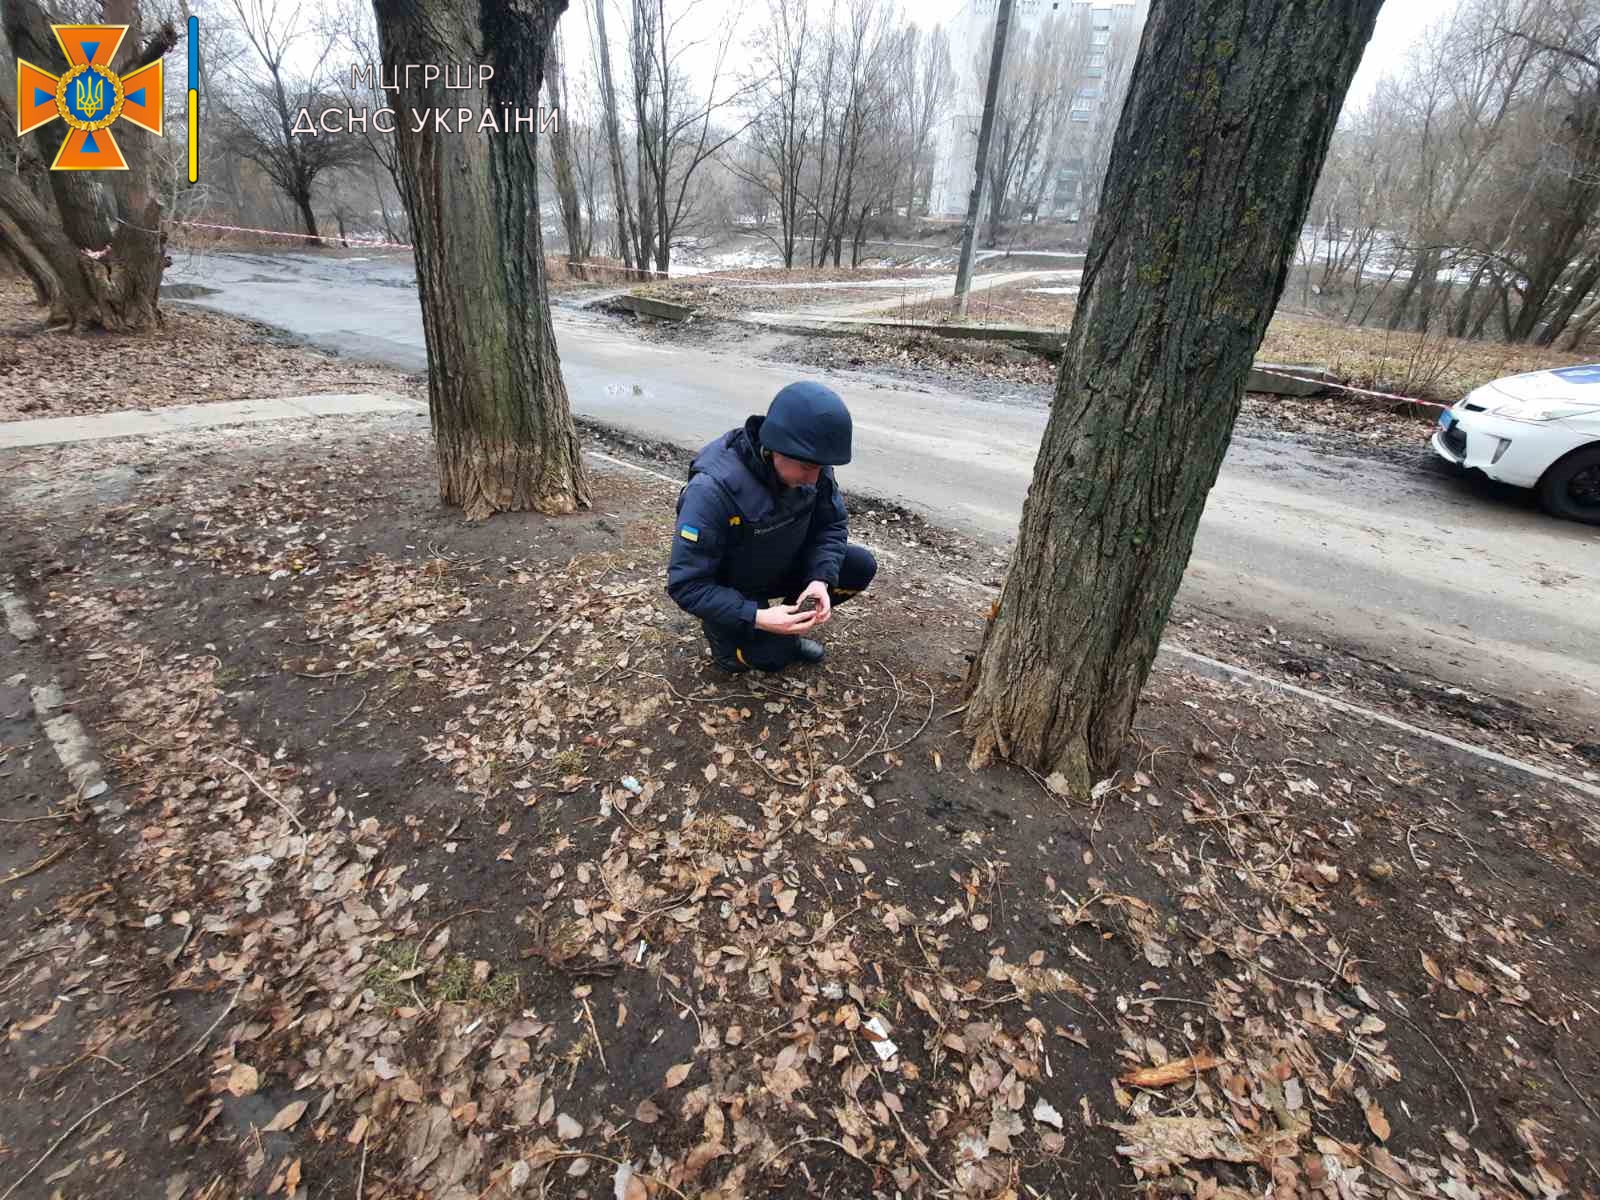 ручную гранату Ф-1 нашли возле дома дома 29 по улице Владислава Зубенко 